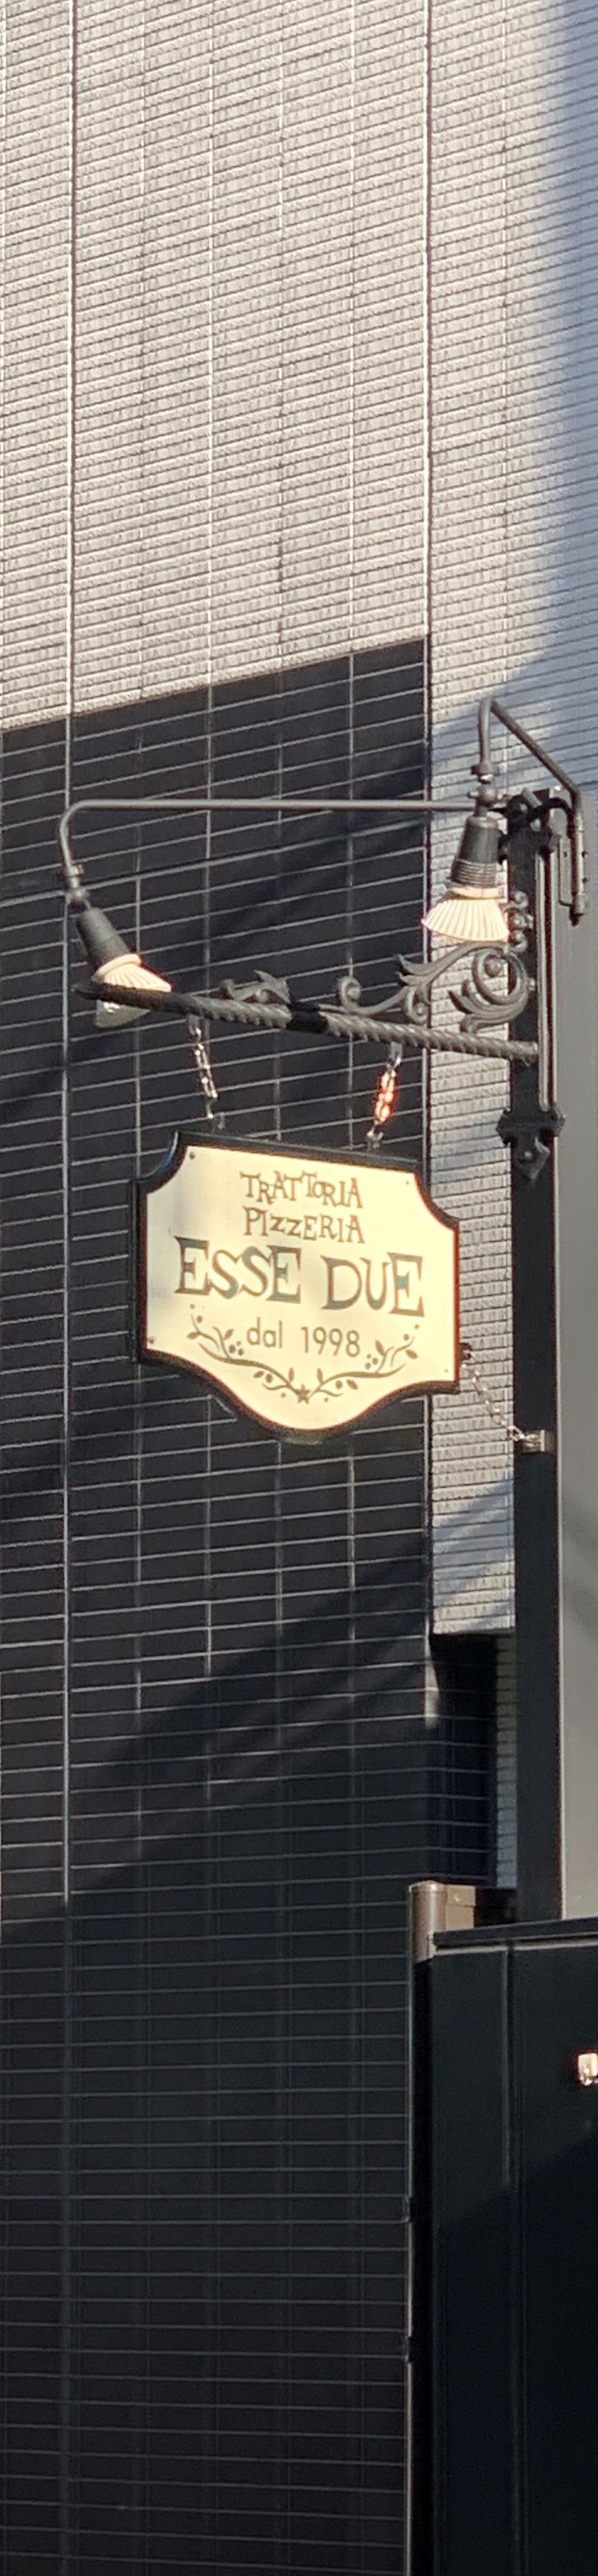 エッセ ドゥエは赤坂で生まれ、20年以上続く老舗ピッツェリアです。